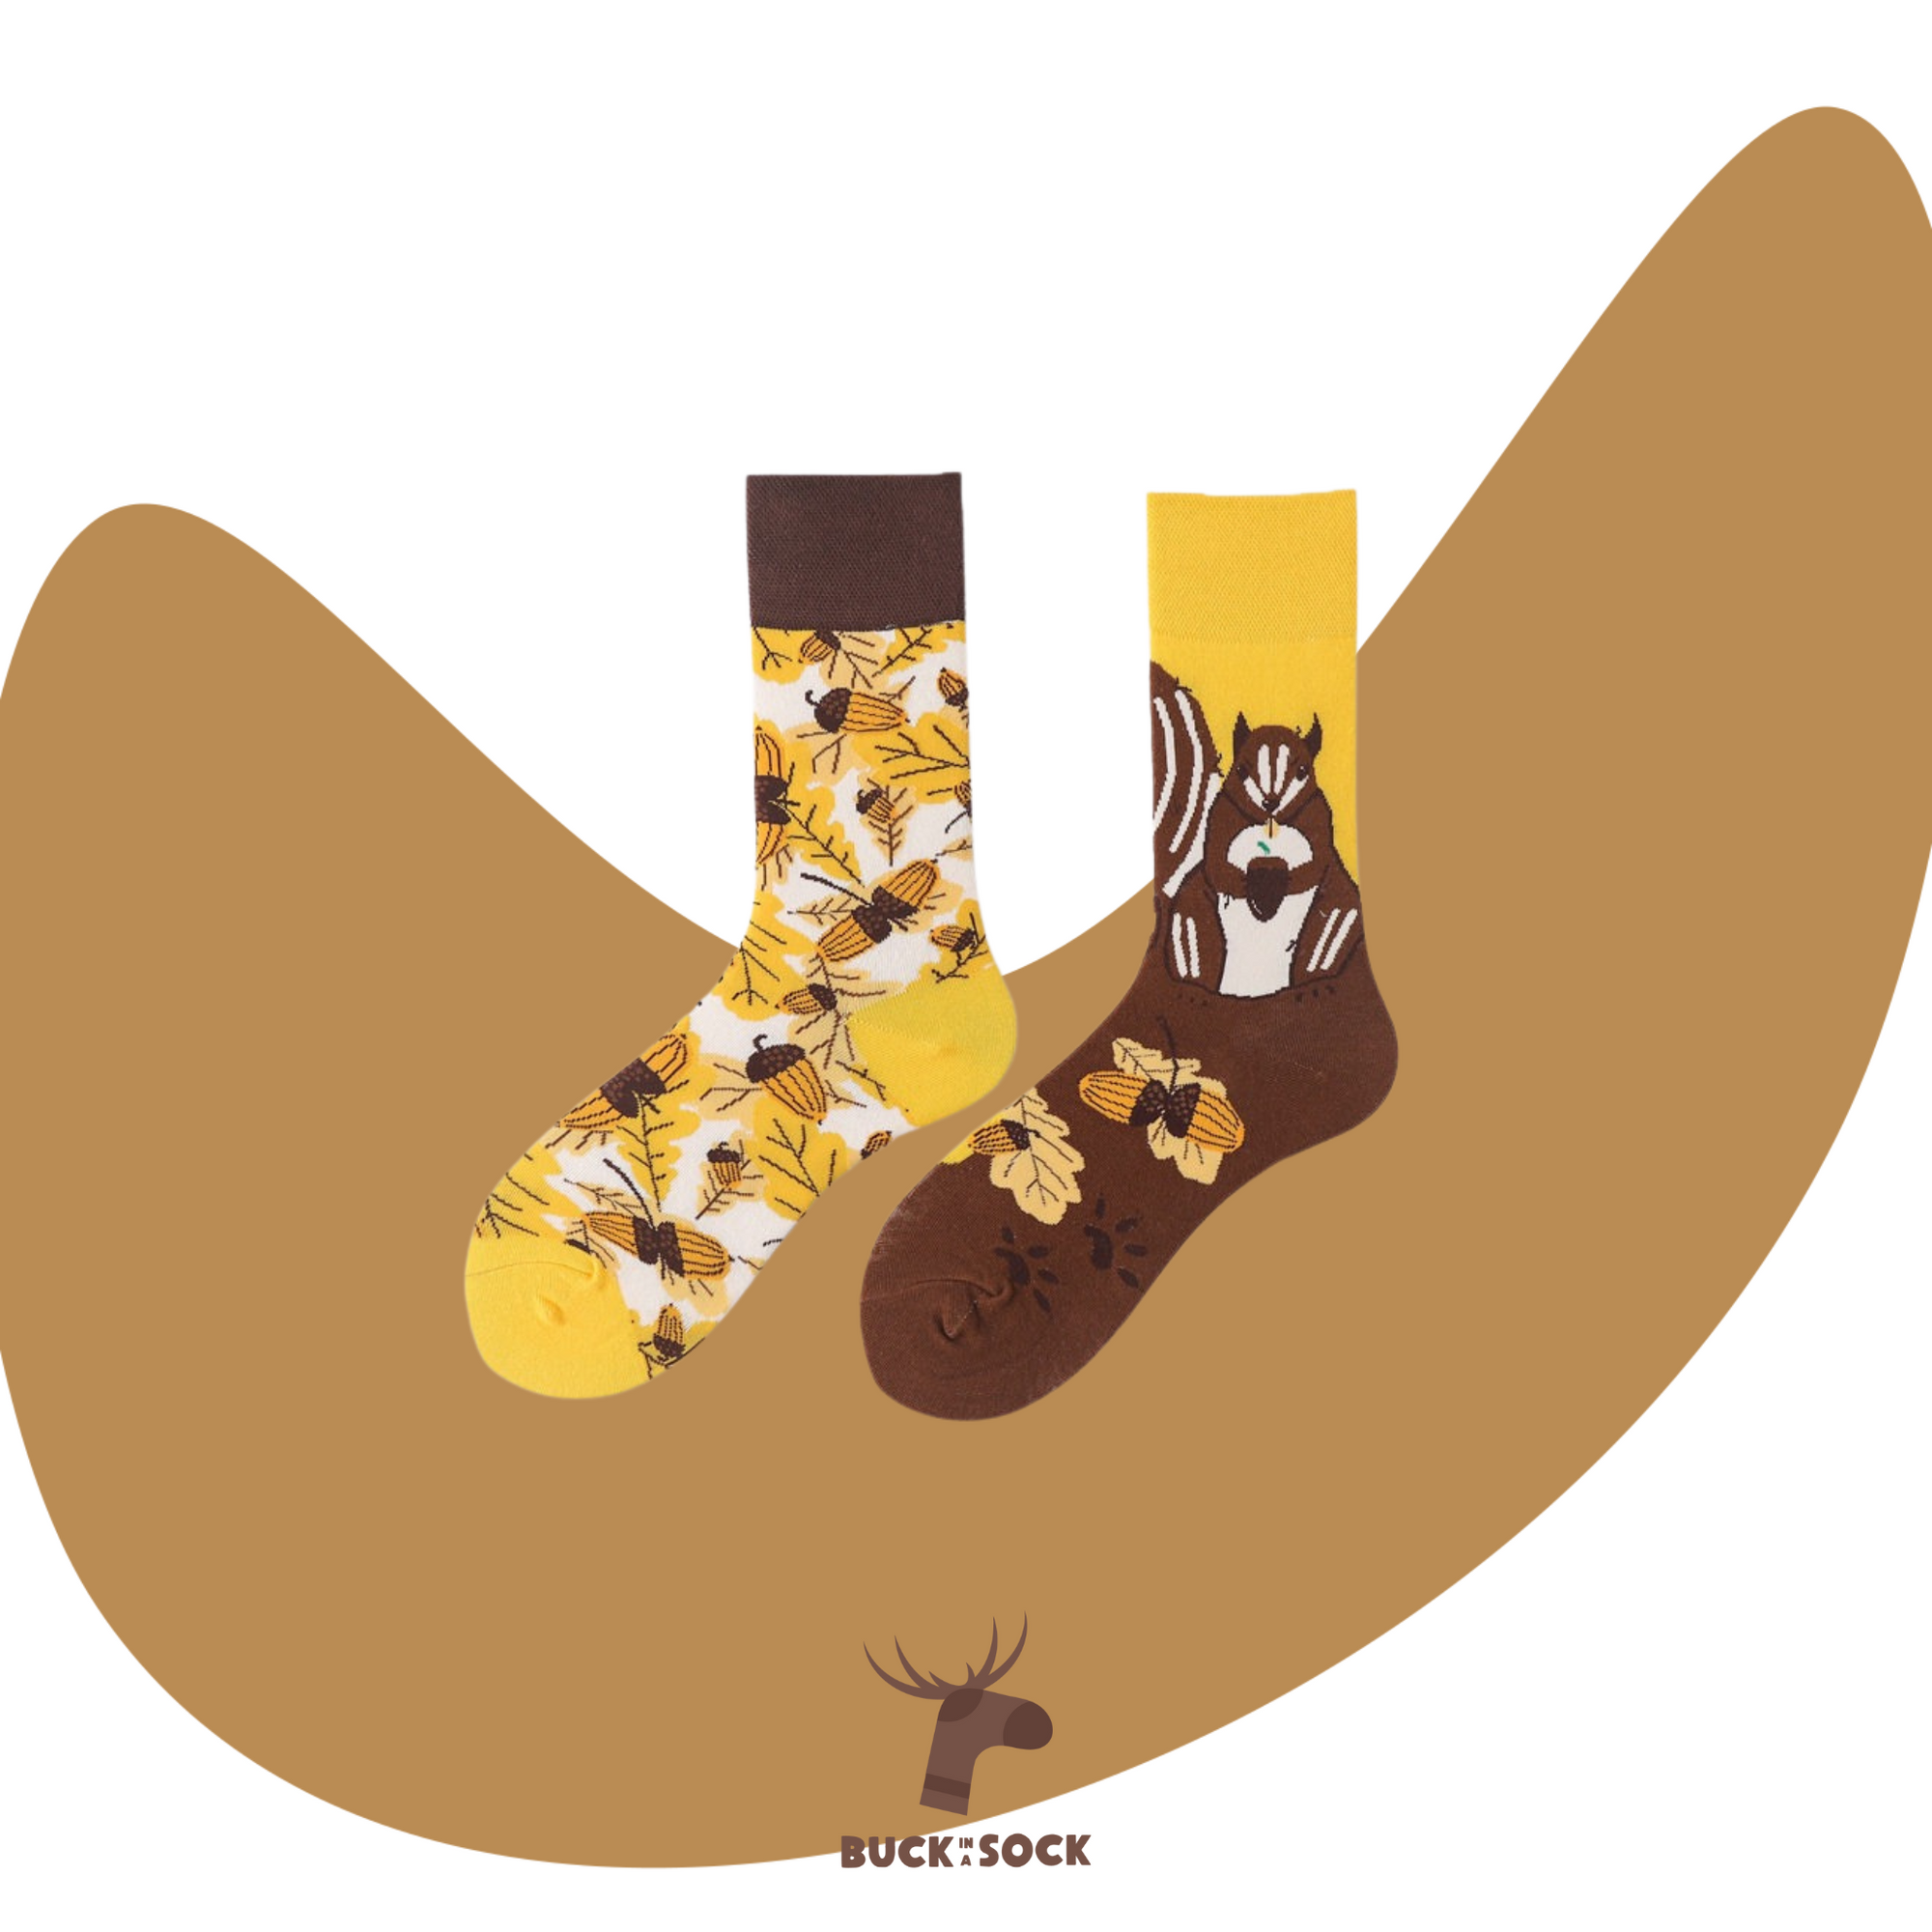 CIOP - Buck in a sock